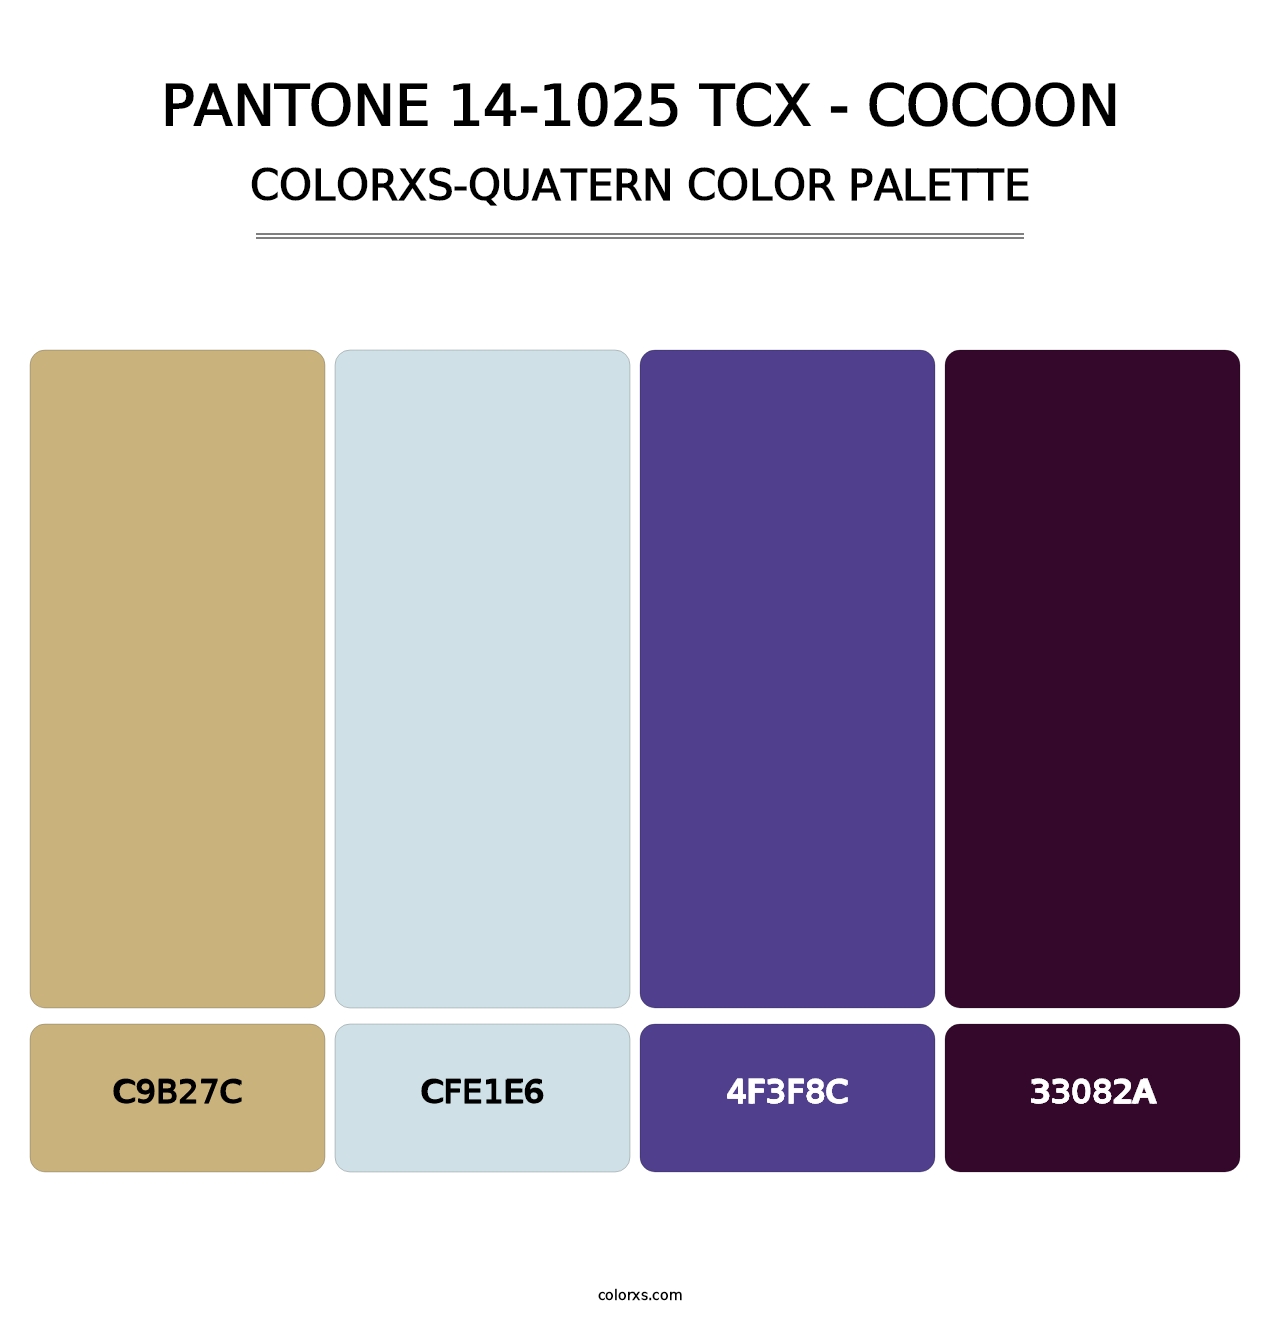 PANTONE 14-1025 TCX - Cocoon - Colorxs Quatern Palette